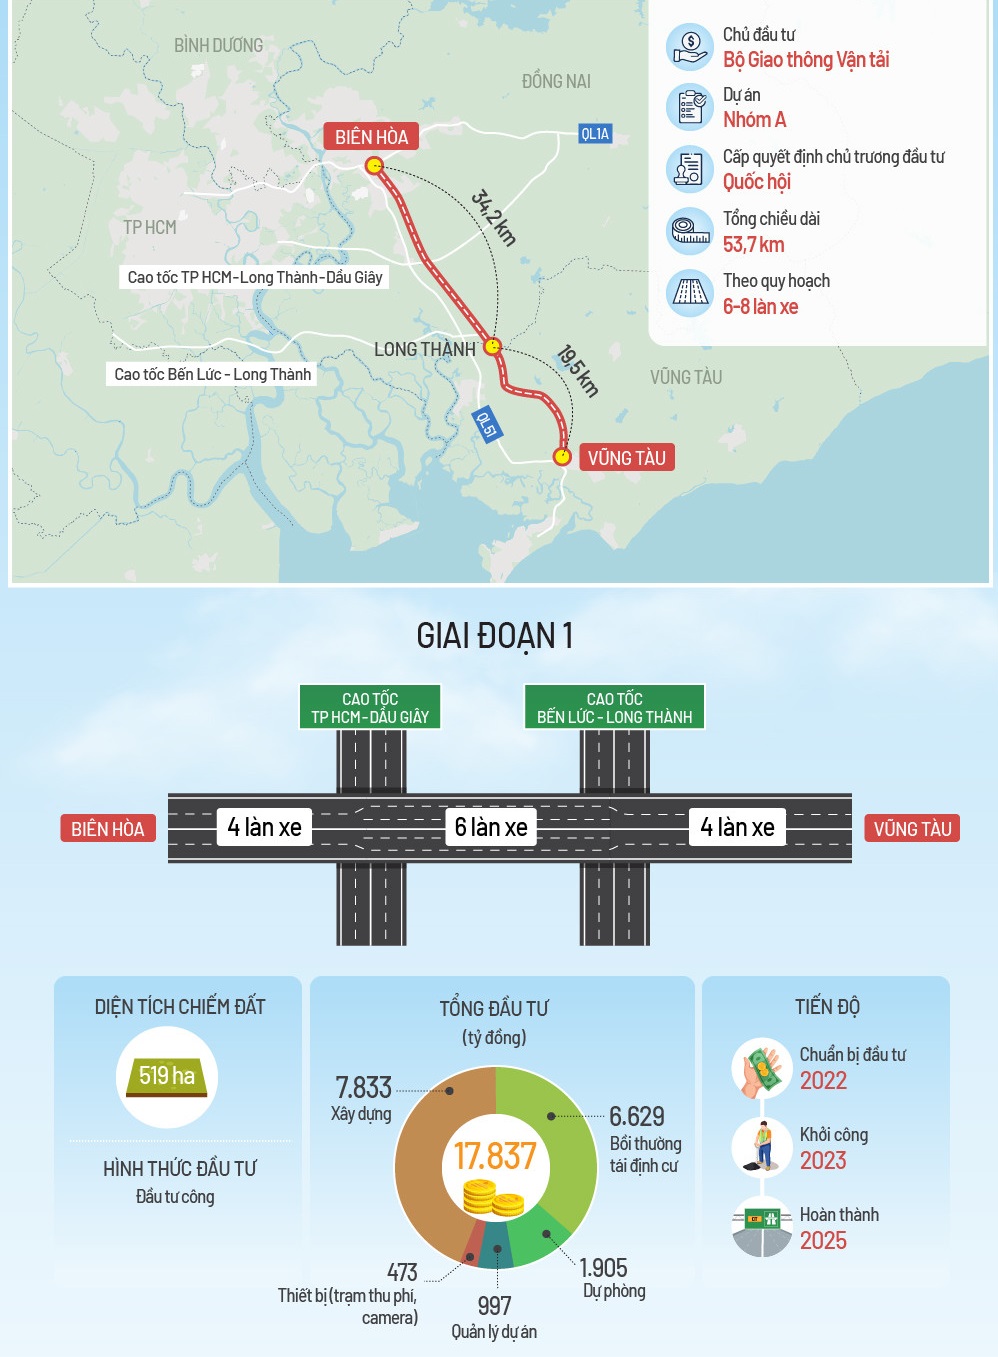 Cao tốc Biên Hòa Vũng Tàu thúc đẩy kinh tế phía Nam